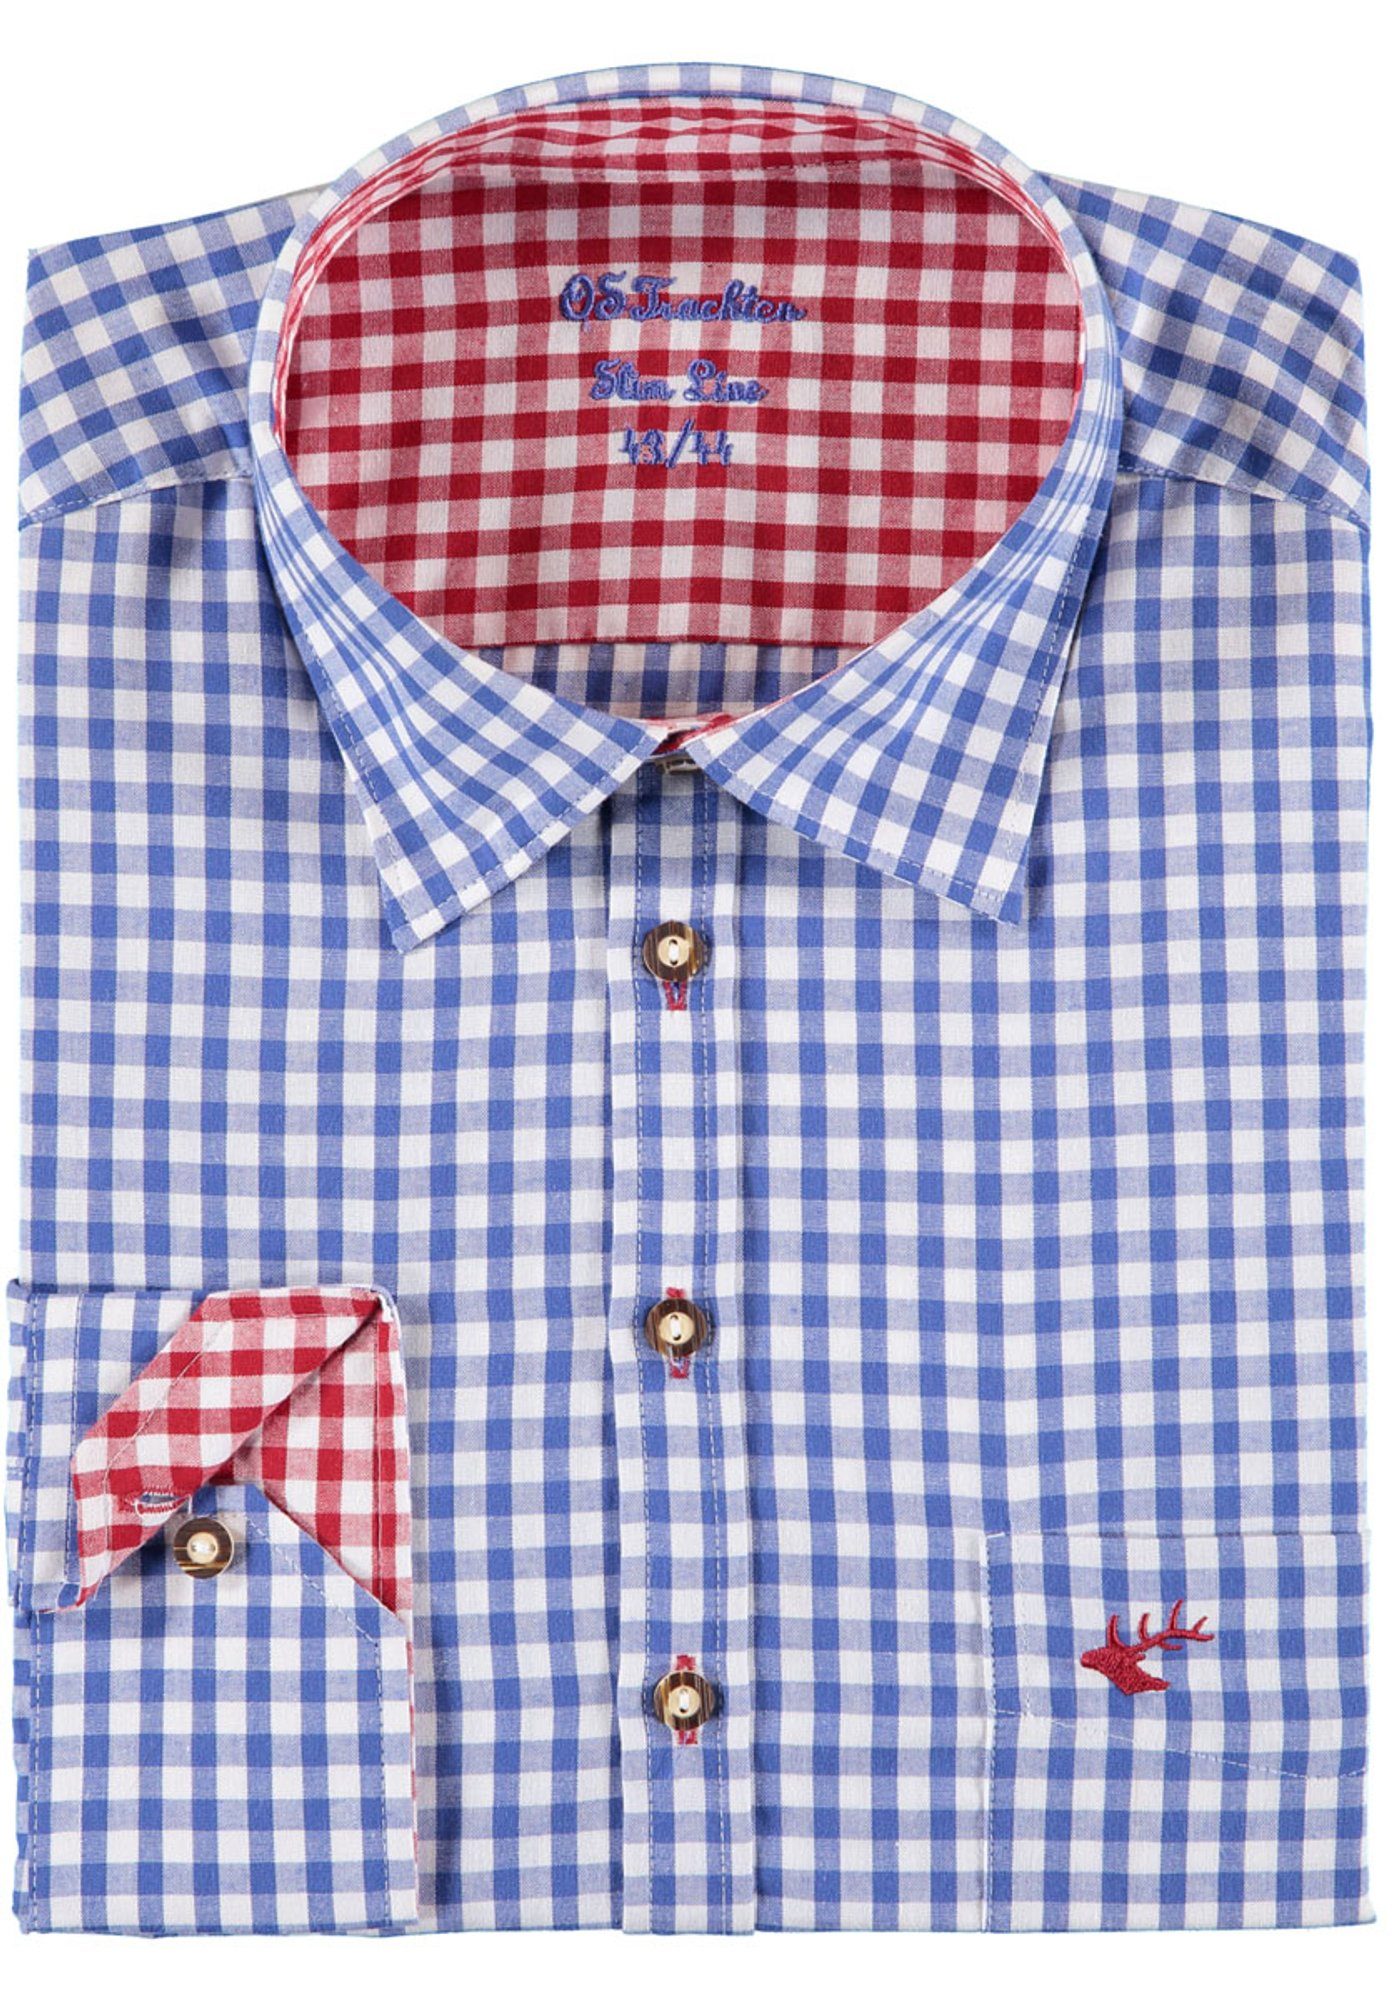 OS-Trachten Trachtenhemd Smegy mit Hirsch-Stickerei, extra lang in Ärmeln und Rumpf mittelblau